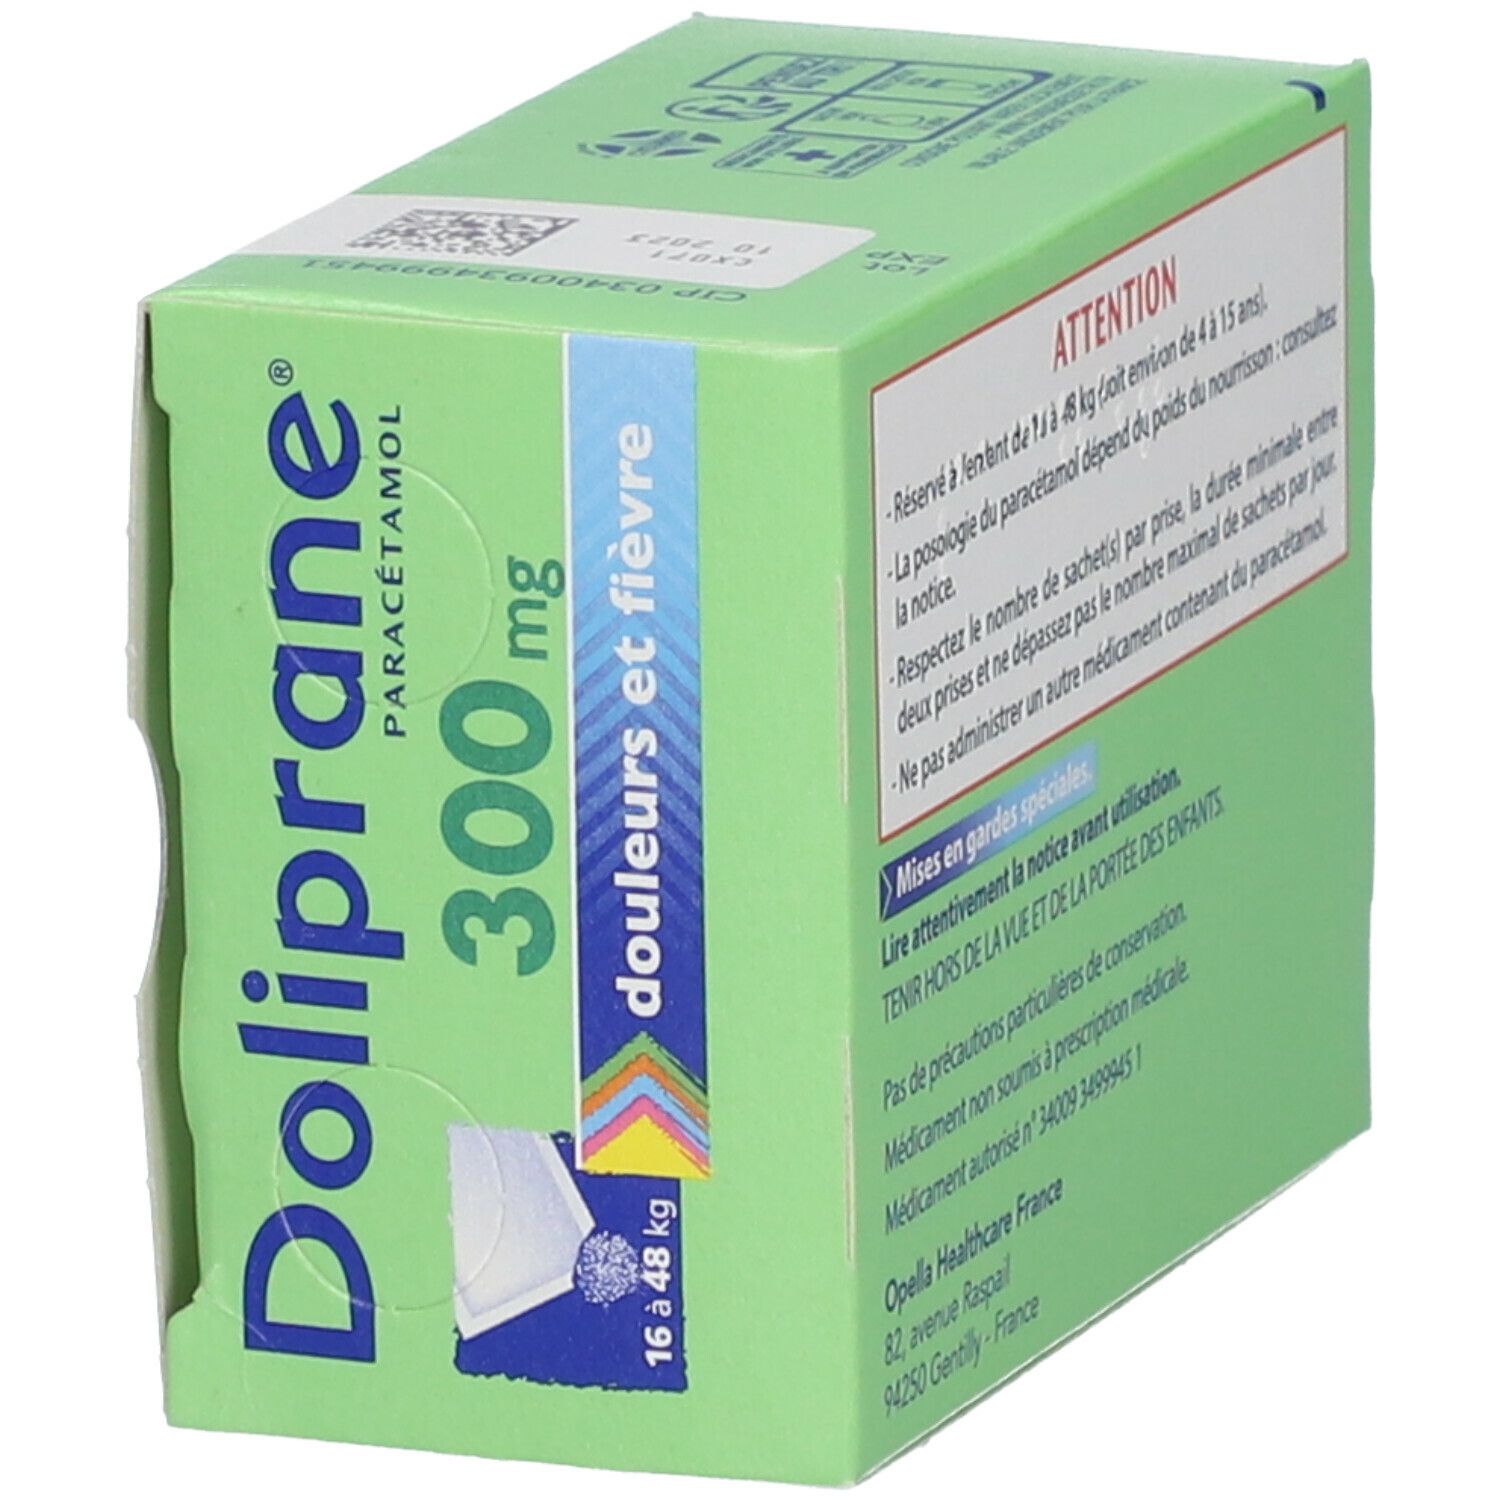 Doliprane® 300 mg